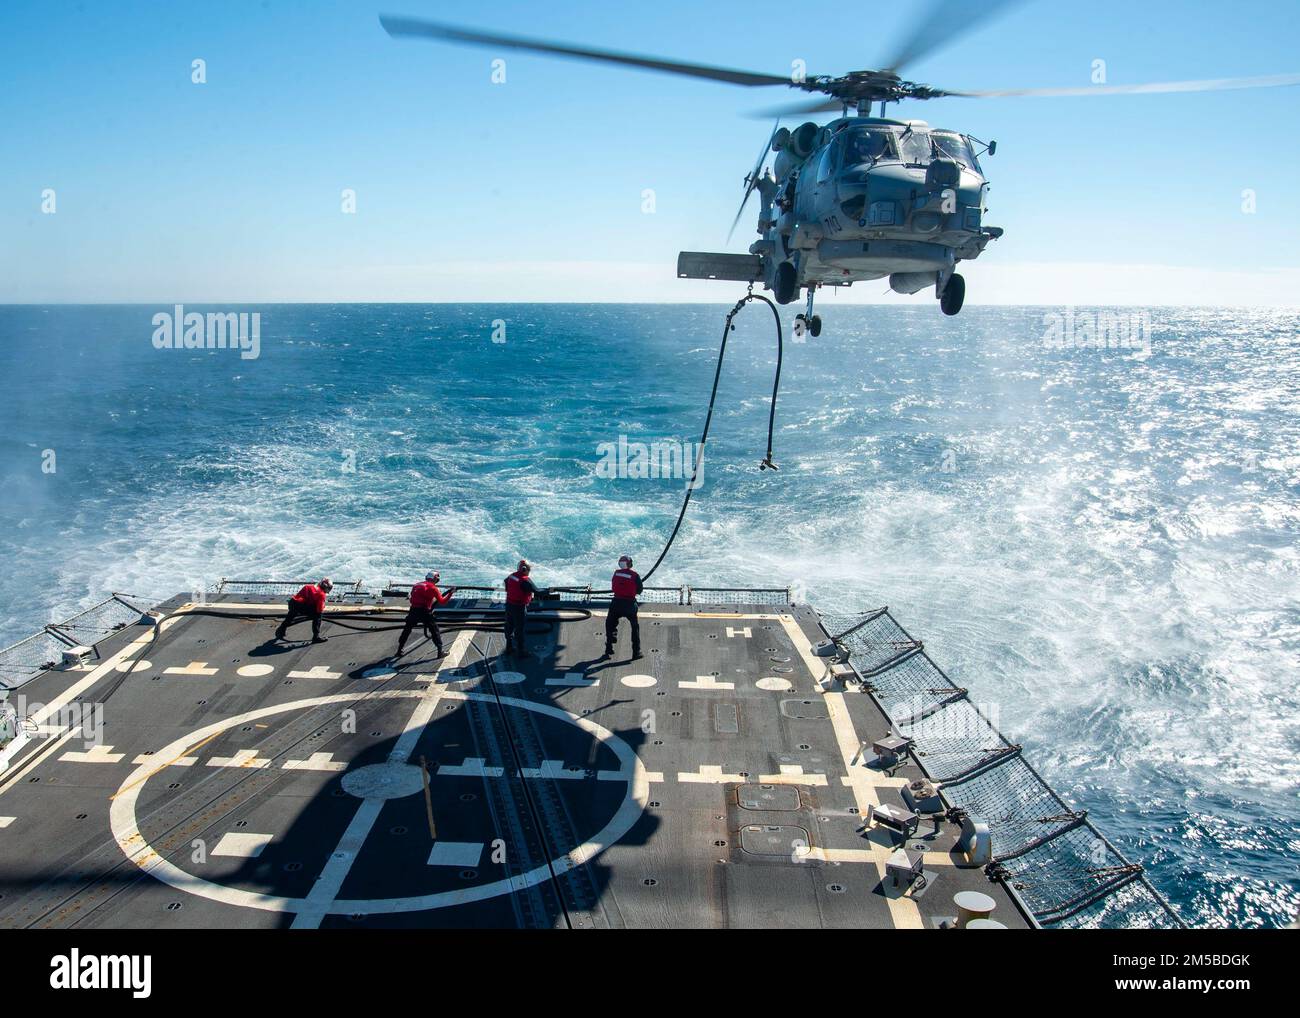 220219-N-EH998-1129 ATLANTISCHER OZEAN (19. Februar 2022) Seeleute an Bord des Guided-Missile Destroyers USS Farragut (DDG 99) betanken während des Fluges mit einem MH-60 Sea Hawk Helikopter, der am Helicopter Maritime Strike Squadron (HSM) 26 befestigt ist, während sie sich auf dem Weg zum Surface Warfare Advanced Tactical Training (SWATT) befinden. Farragut ist Teil der Destroyer Squadron (DESRON) 26, die die Carrier Strike Group (CSG) 10 unterstützt. SWATT wird vom Naval Surface and Mine Warfighting Development Center (SMWDC) geleitet und soll die Kampffähigkeit, die Letalität und die Interoperabilität der teilnehmenden Einheiten verbessern. Stockfoto